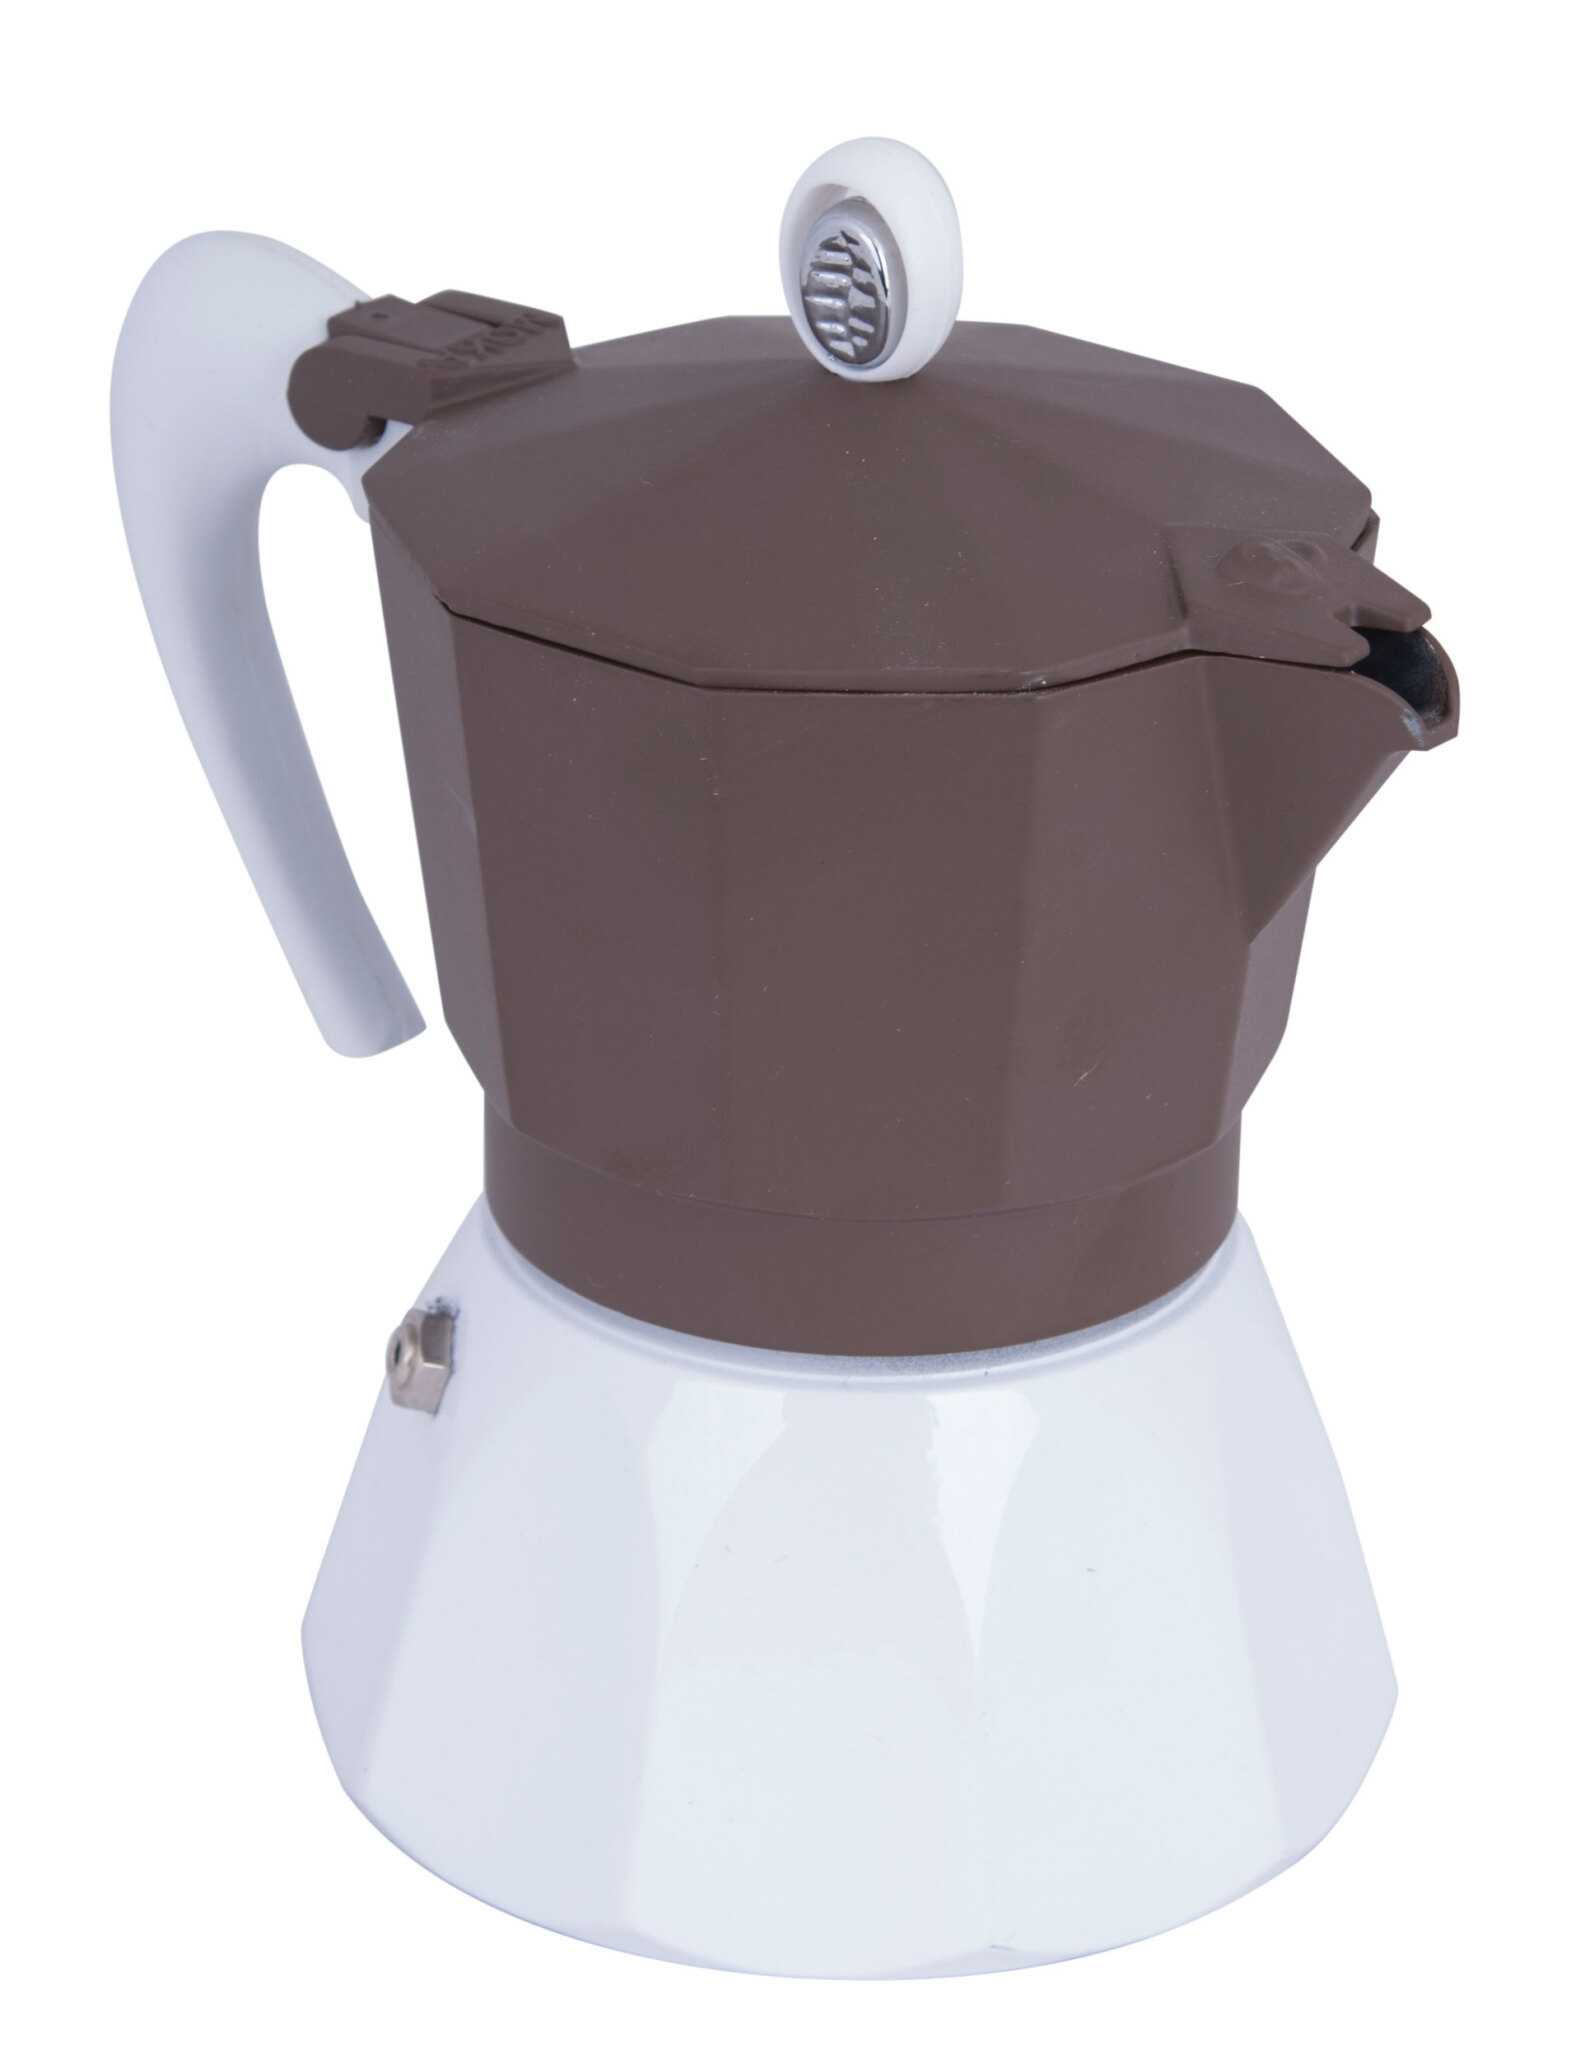  اسپرسو ساز گلوسا 6 نفره قهوه ای سفید G.A.T دارای خط و خش | دستگاه قهوه ساز ارزان | اسپرسو ساز | قهوه ساز دست دوم 